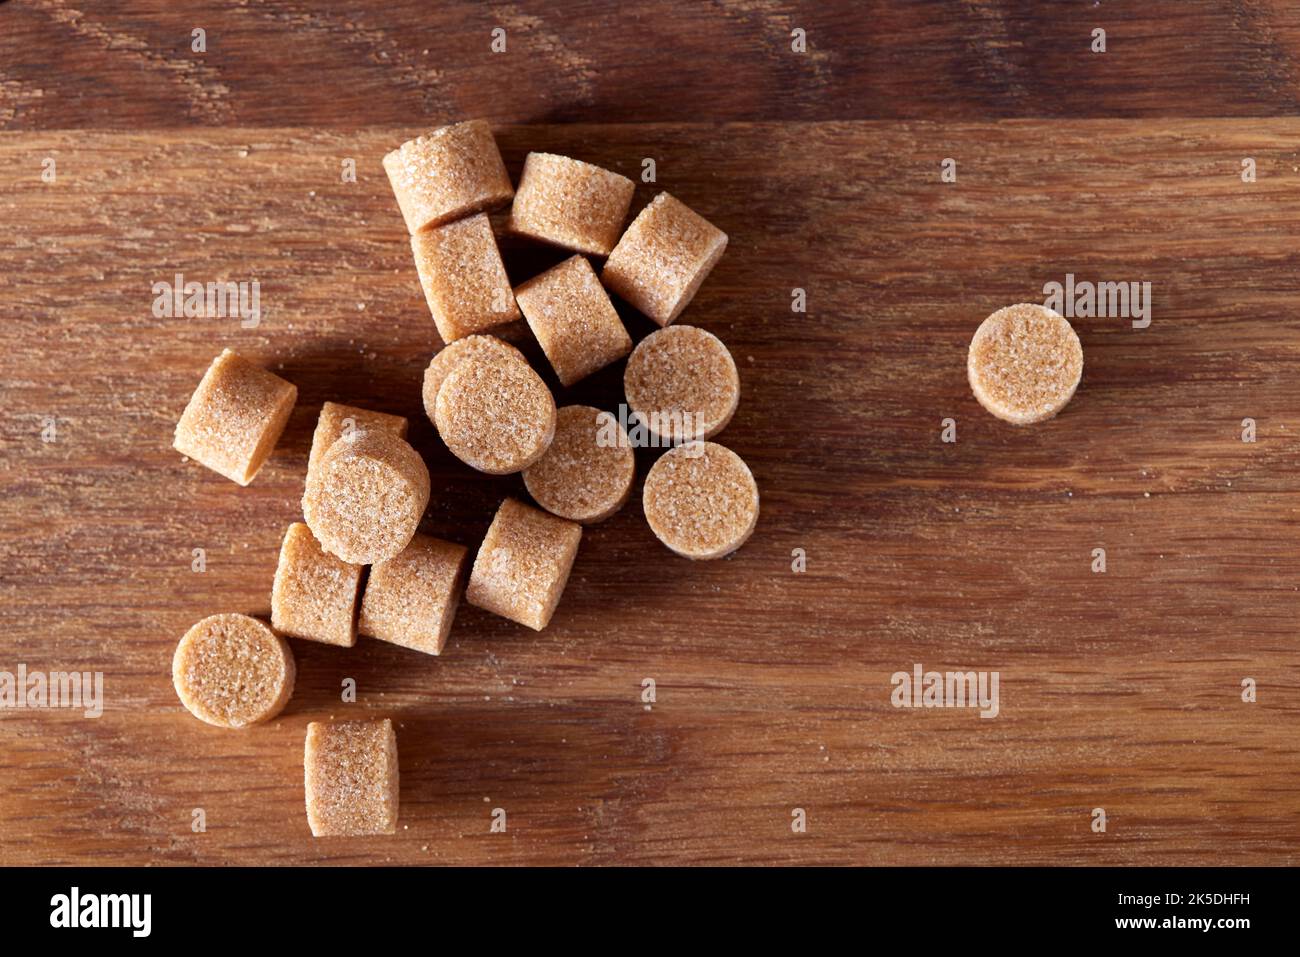 El azúcar marrón redondo se forma sobre una vieja tabla de madera oscura - vista superior Foto de stock